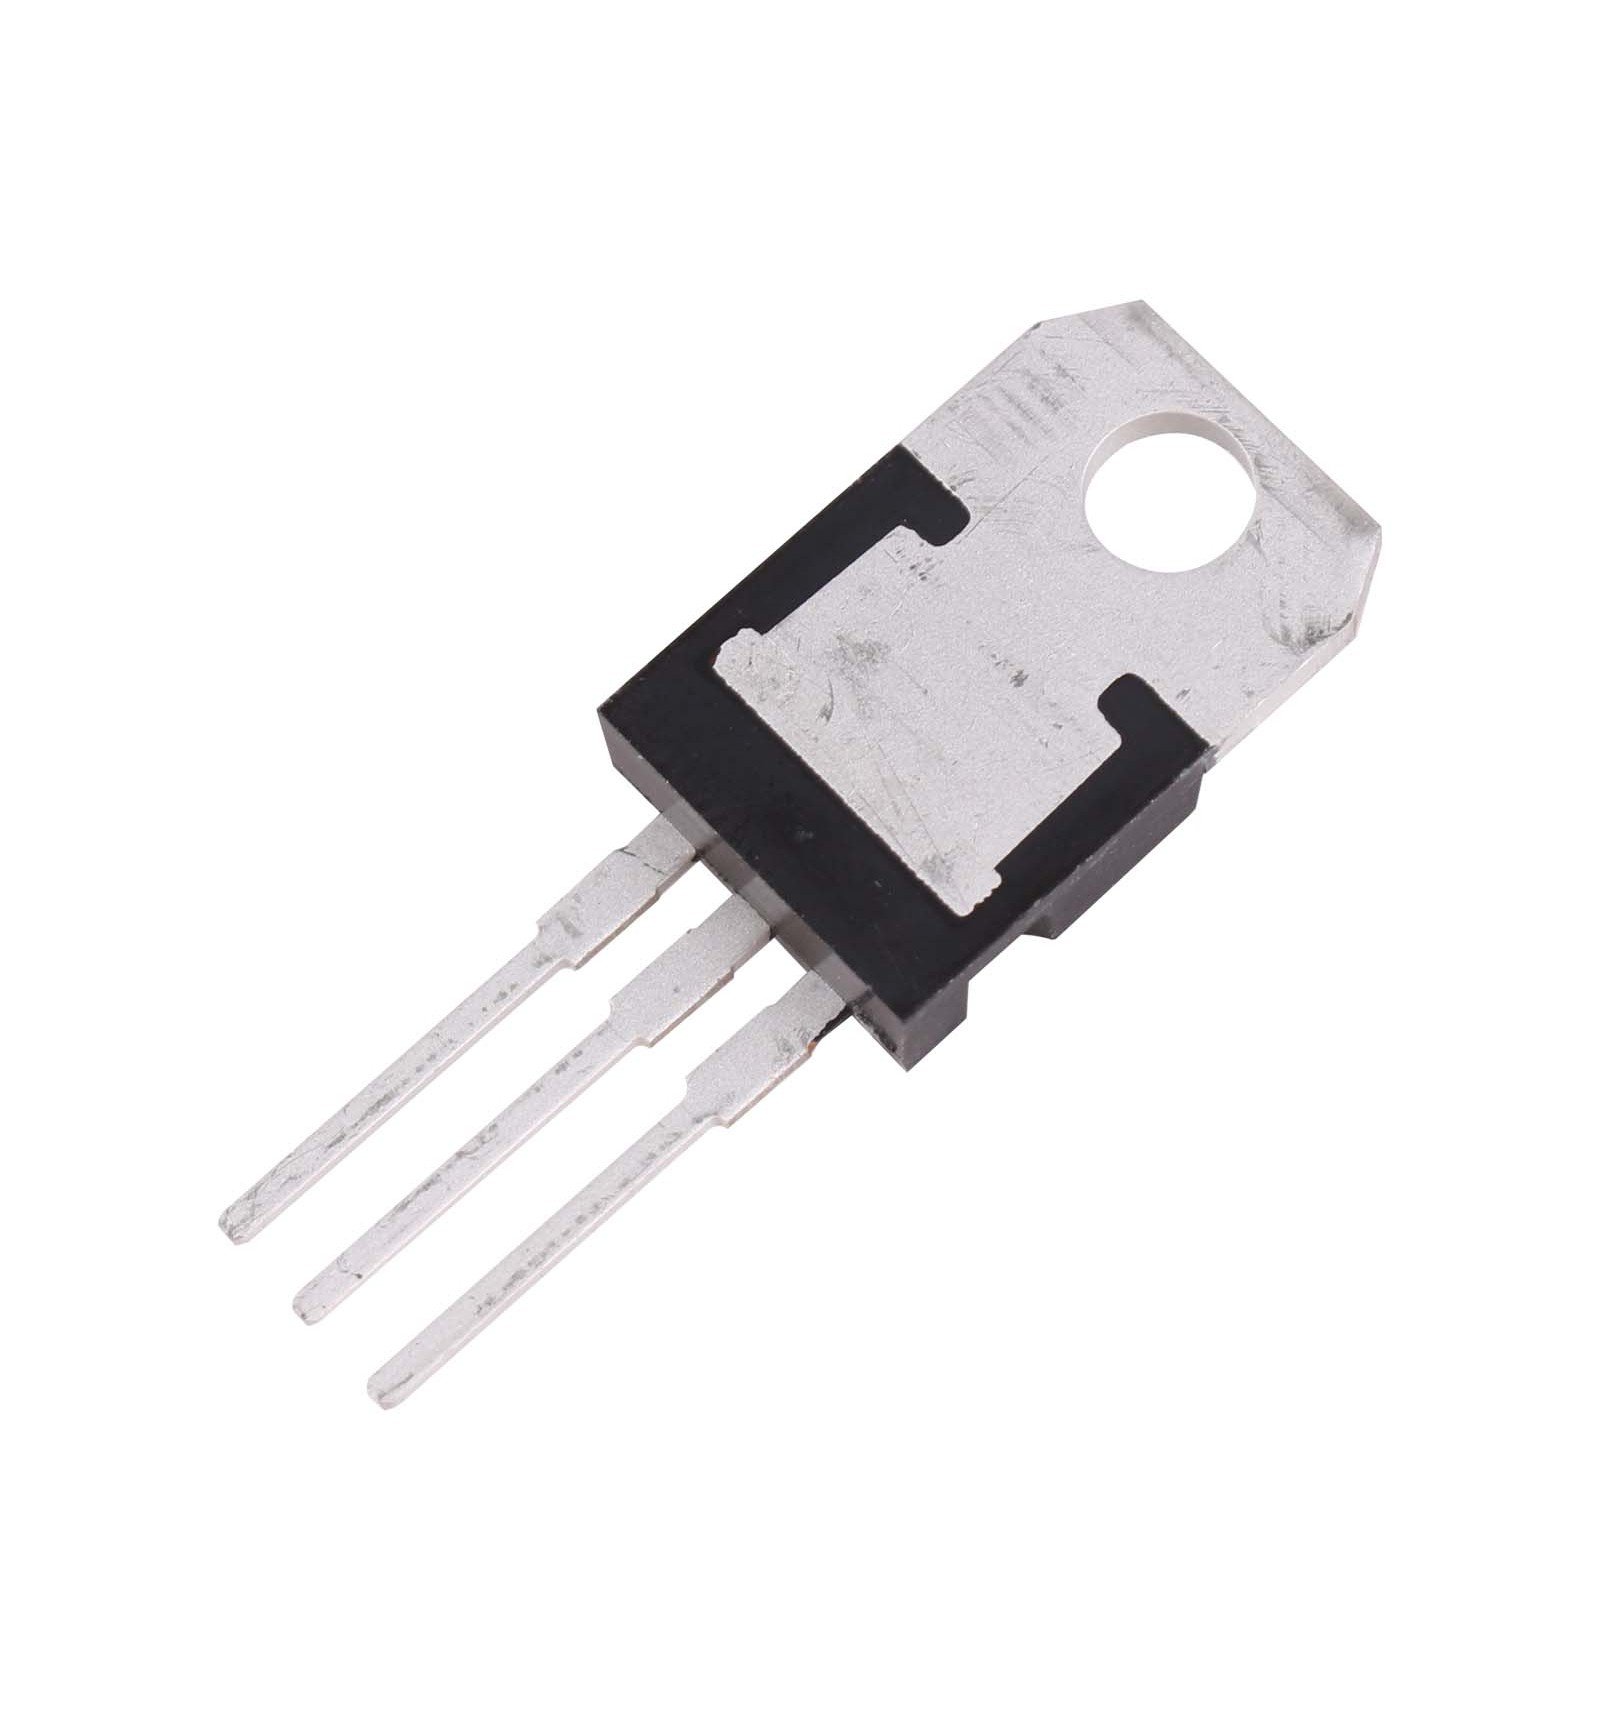 TIP41C NPN Transistor | 100V, 6A, Power Transistor